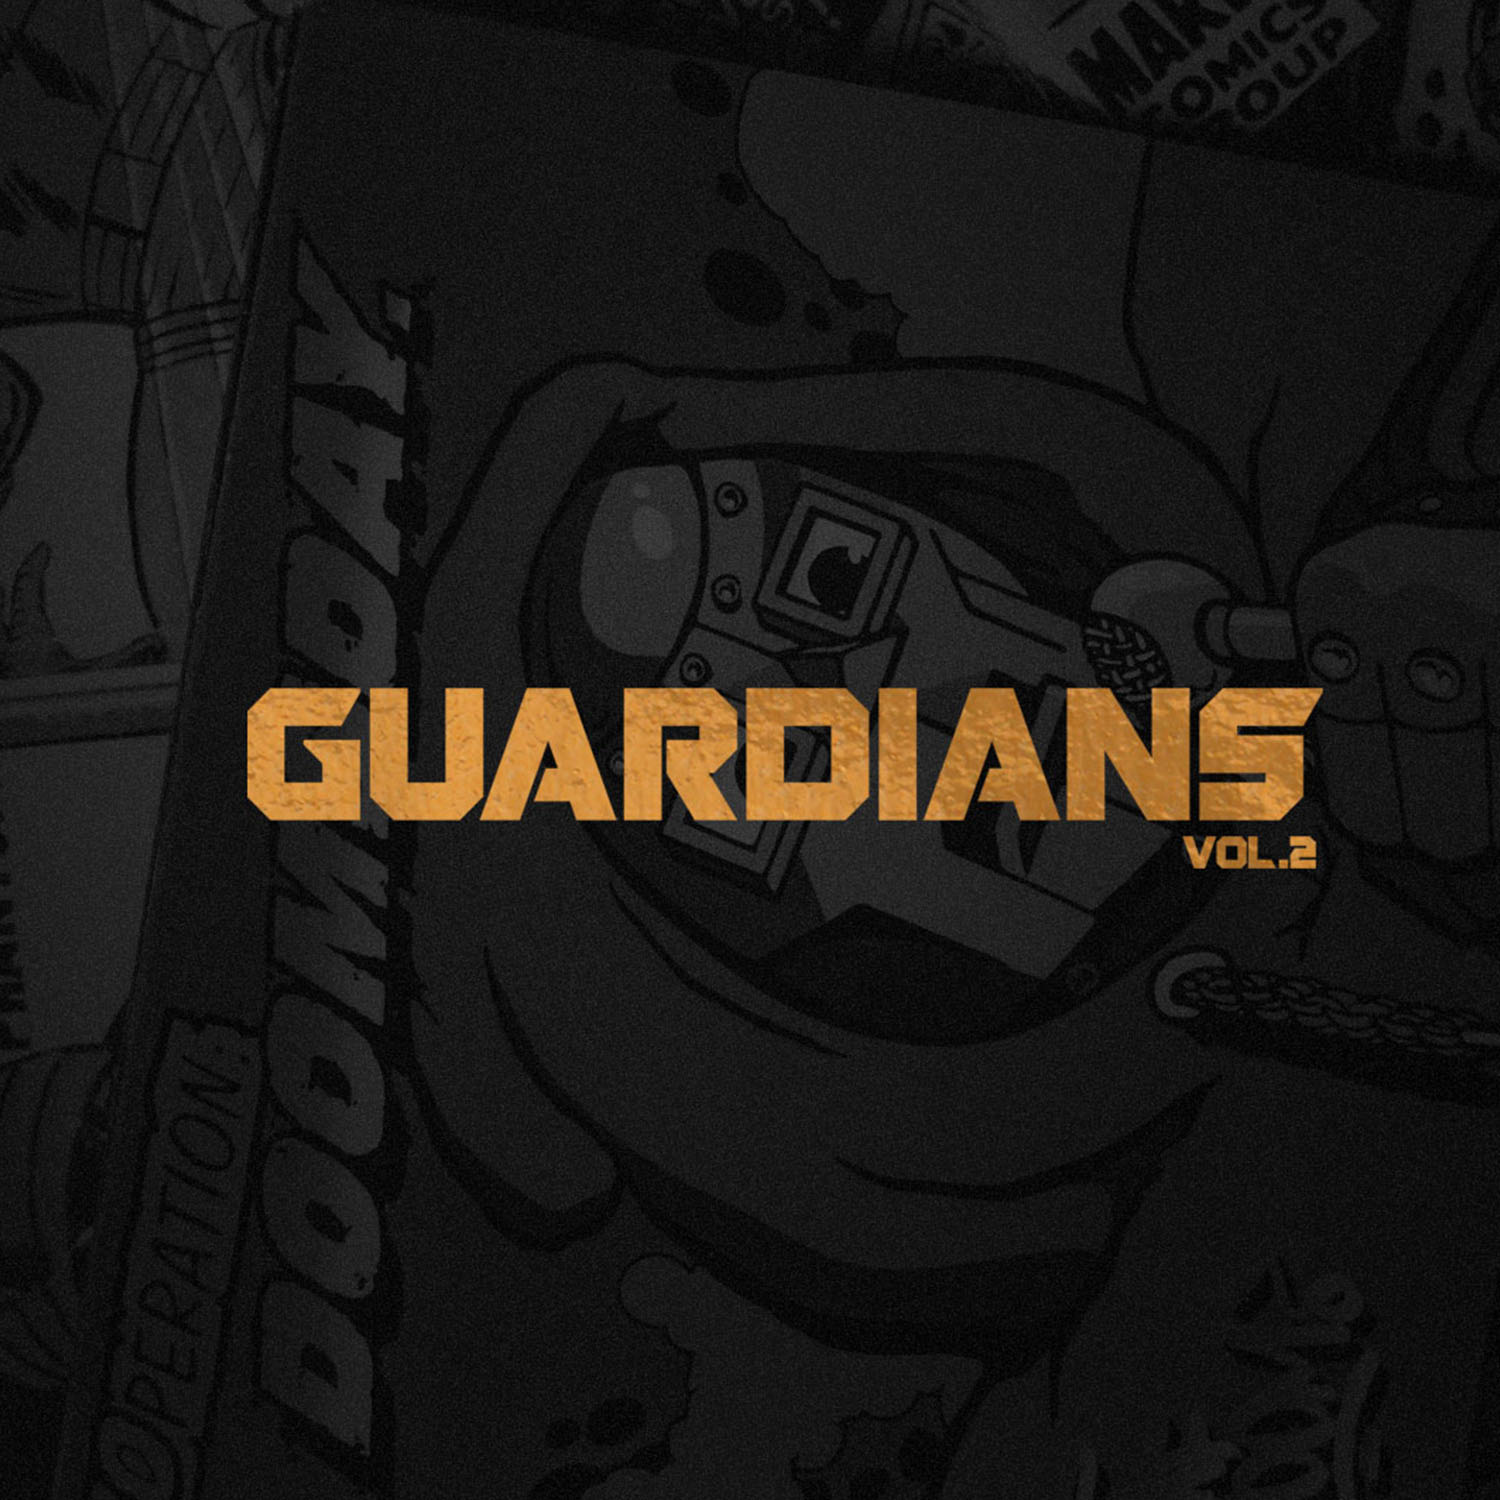  Guardians Vol. 2